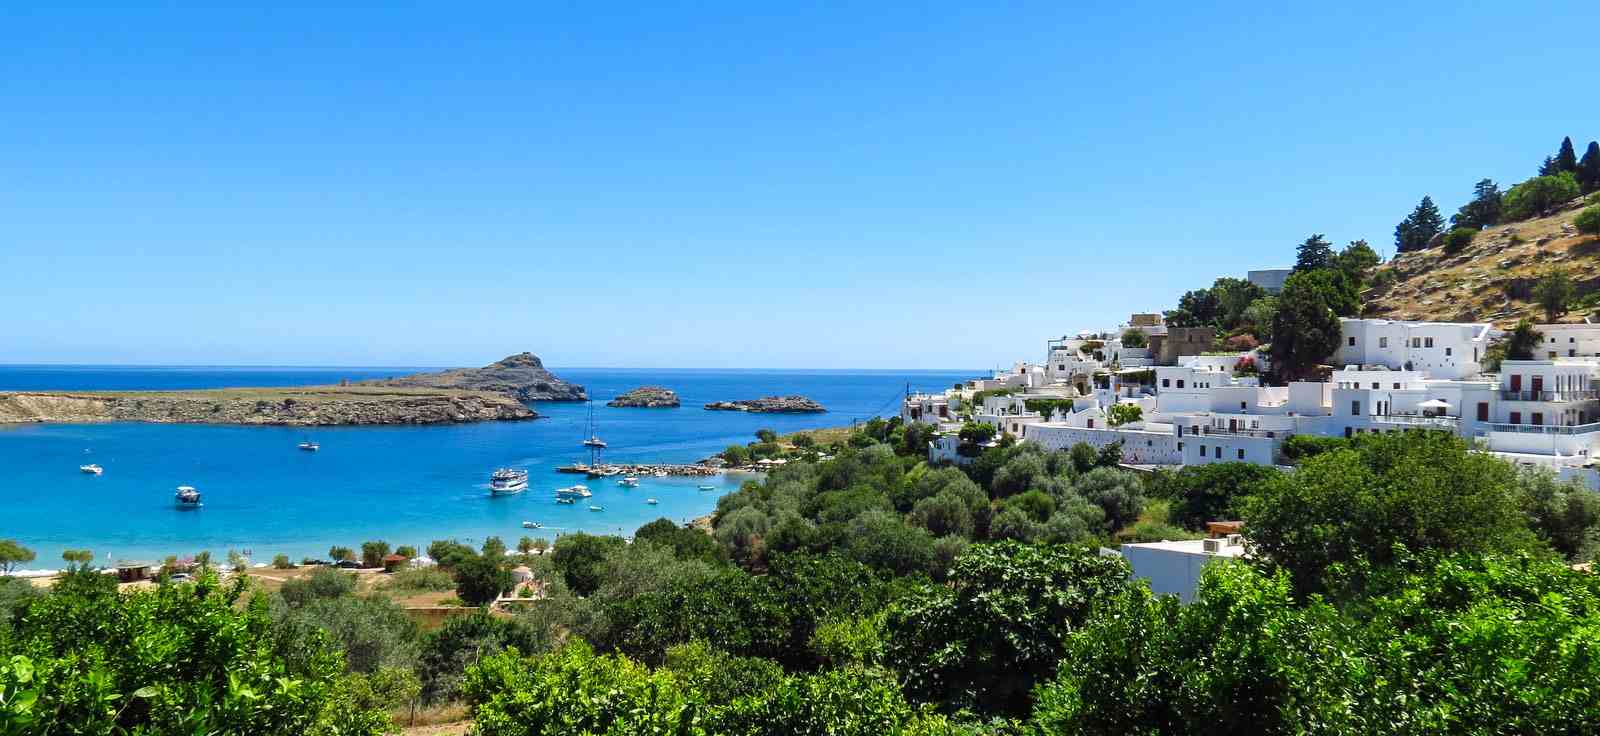 Круизы по Греческим островам из Афин, Эфеса и Стамбула от Celestyal Cruises...